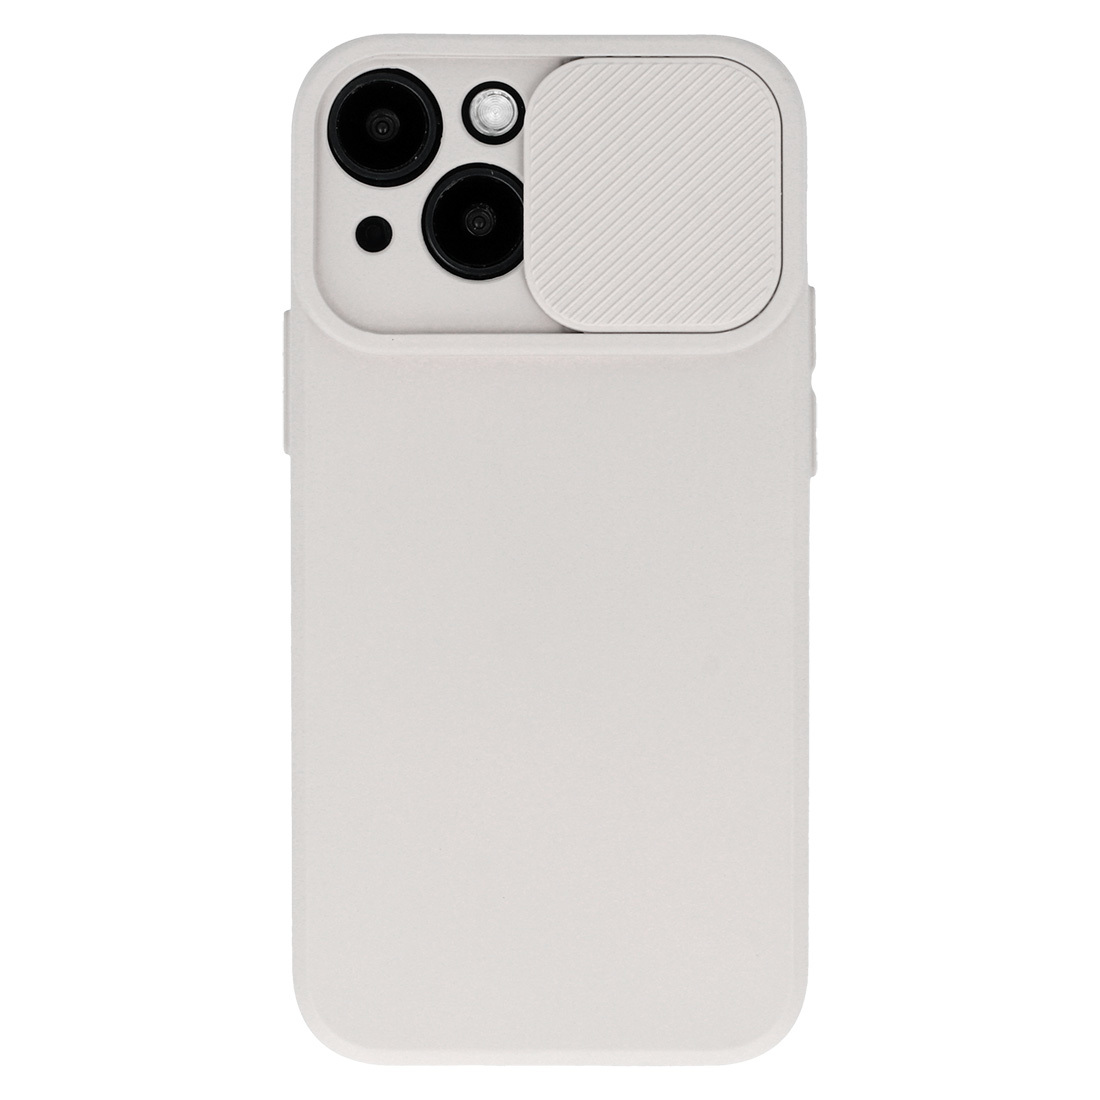 Pokrowiec etui z elastycznego TPU Camshield Soft Case beowe APPLE iPhone 11 Pro Max / 2